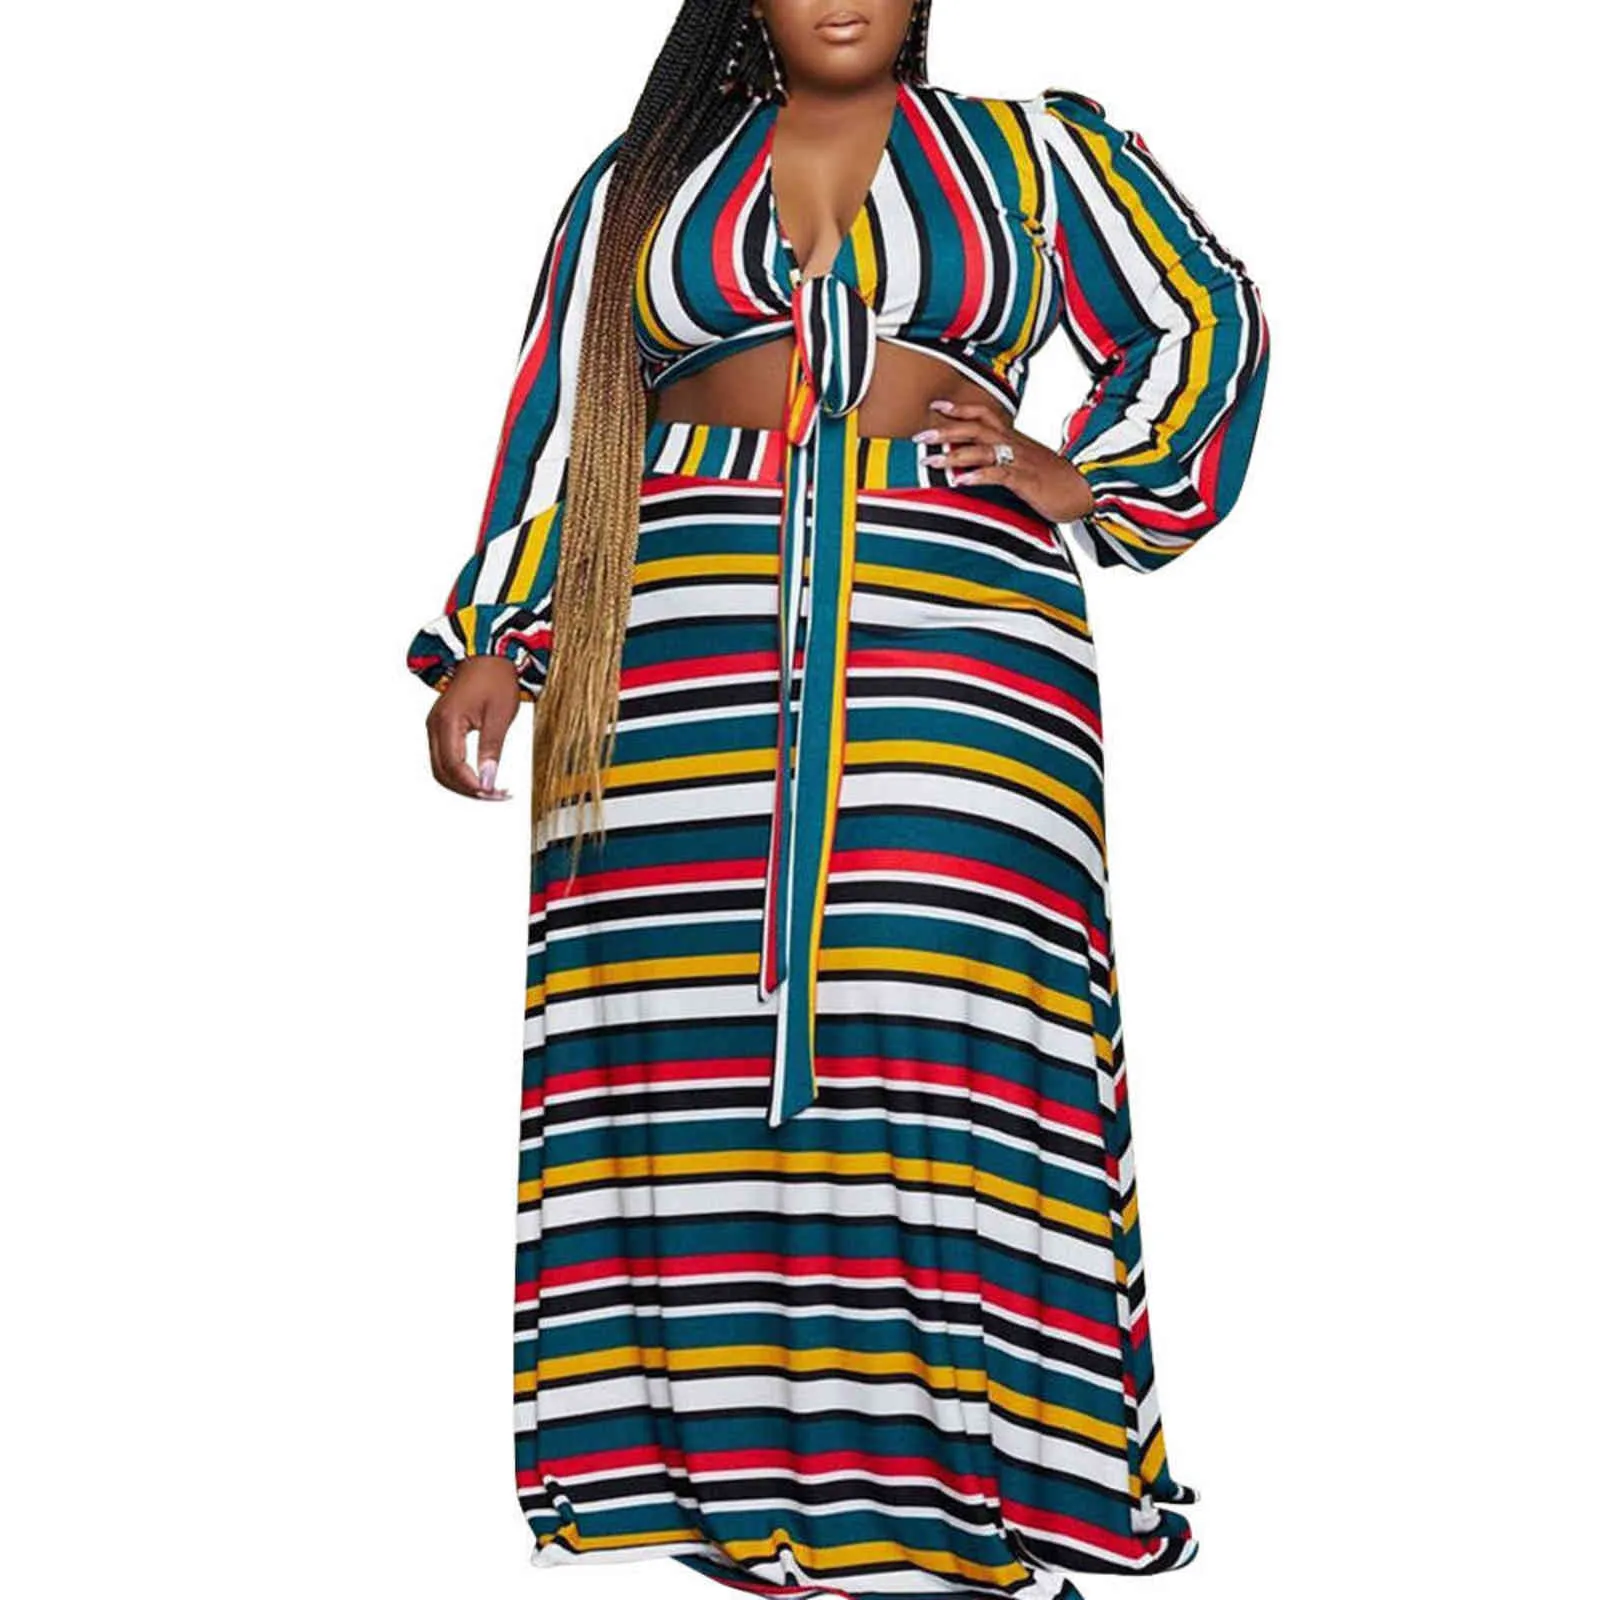 Zoctuo 플러스 사이즈 스커트 가을 긴 소매 드레스 V 넥 다채로운 스트라이프 인쇄 큰 레이스 2111115